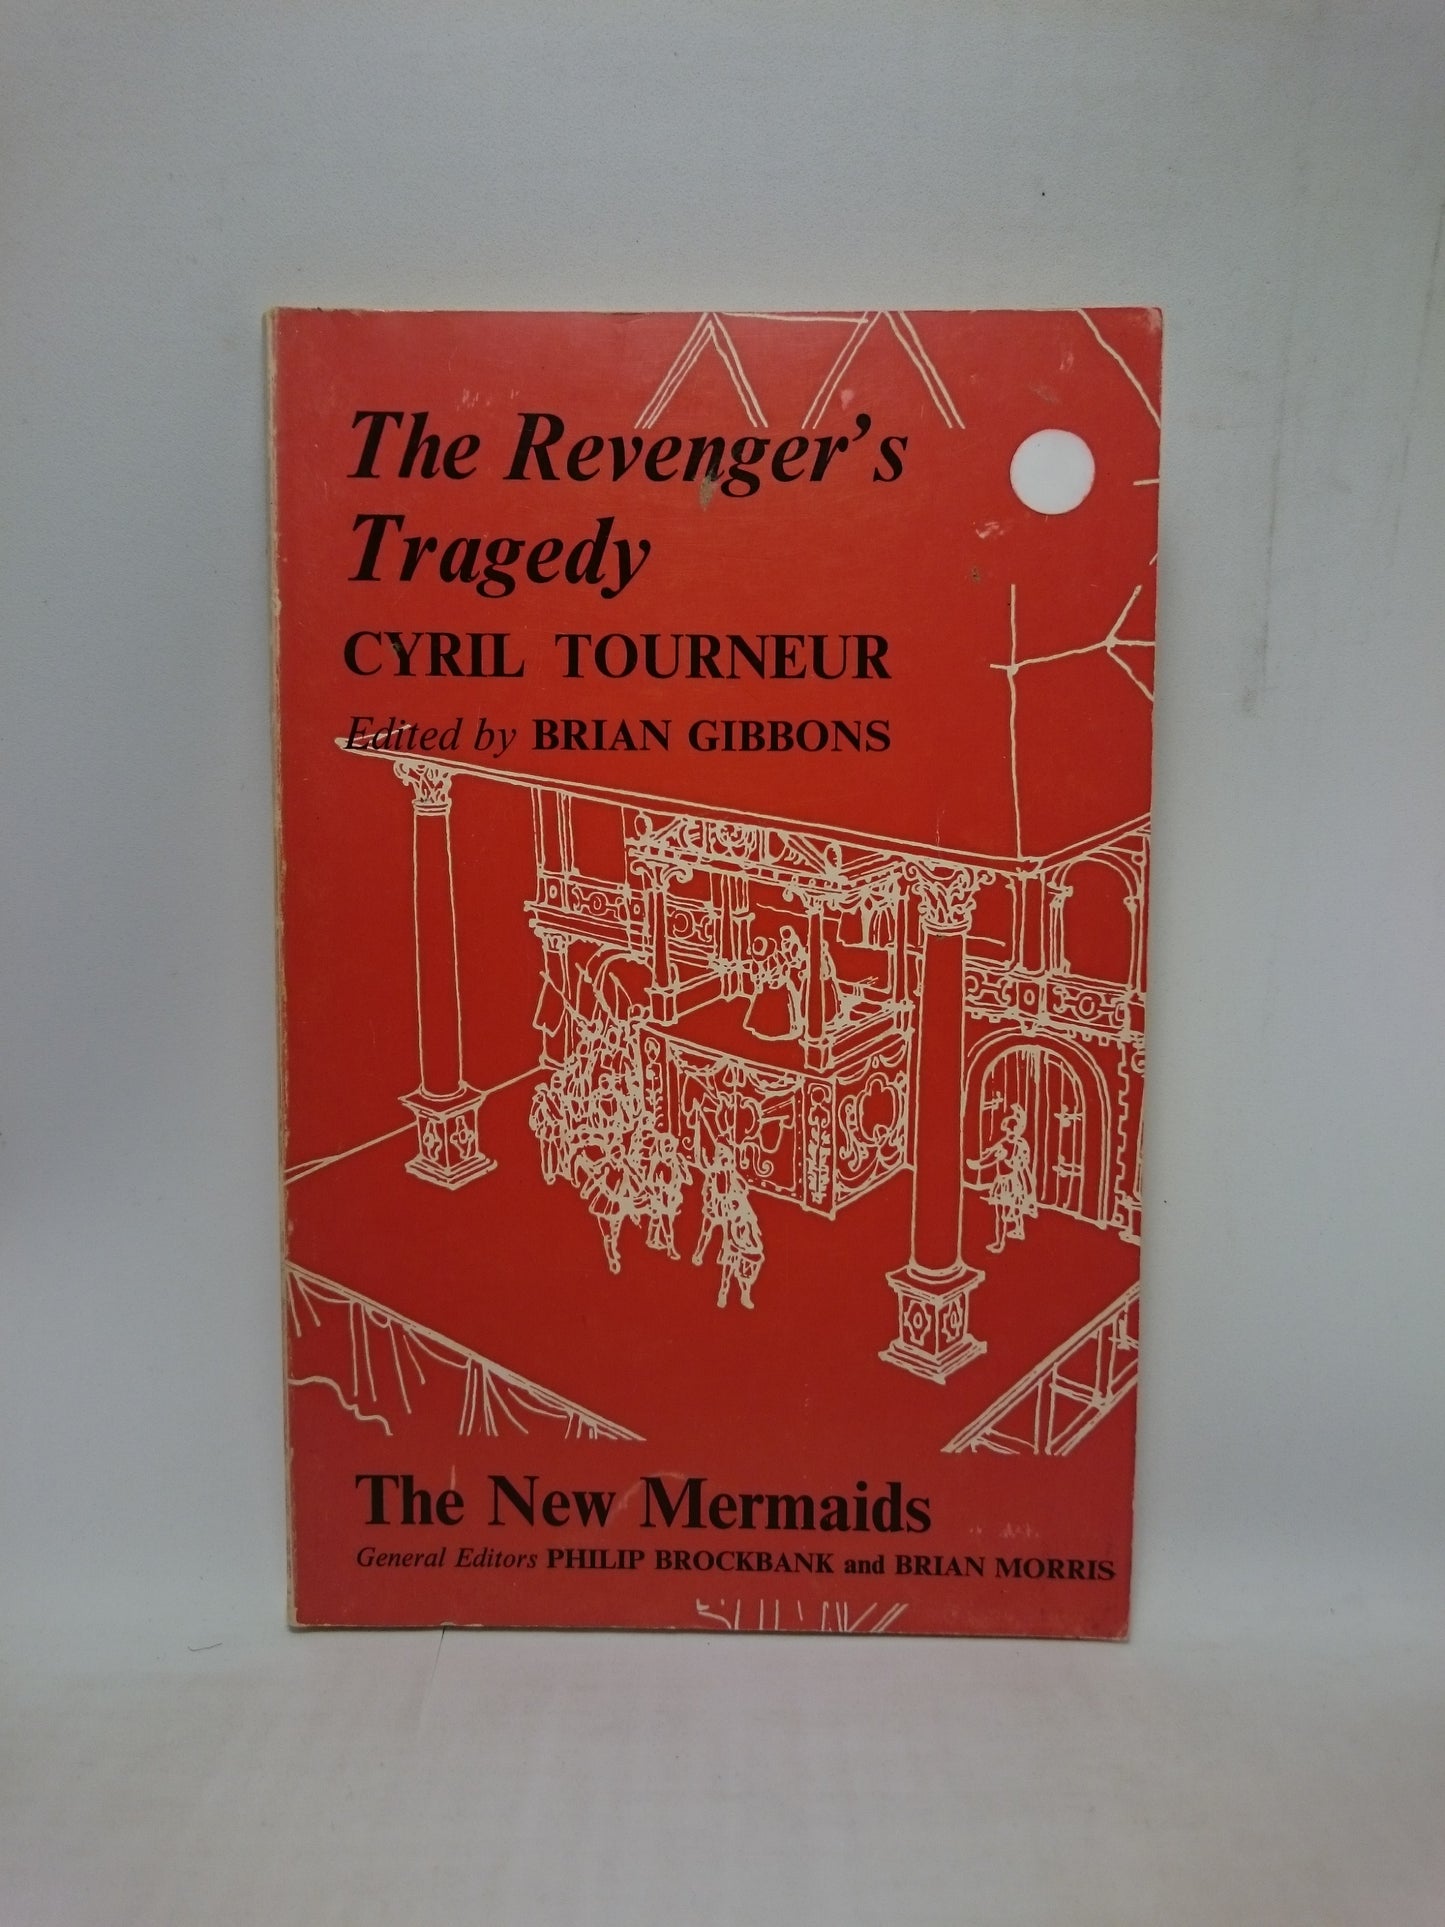 The Revenger's Tragedy: The New Mermaids